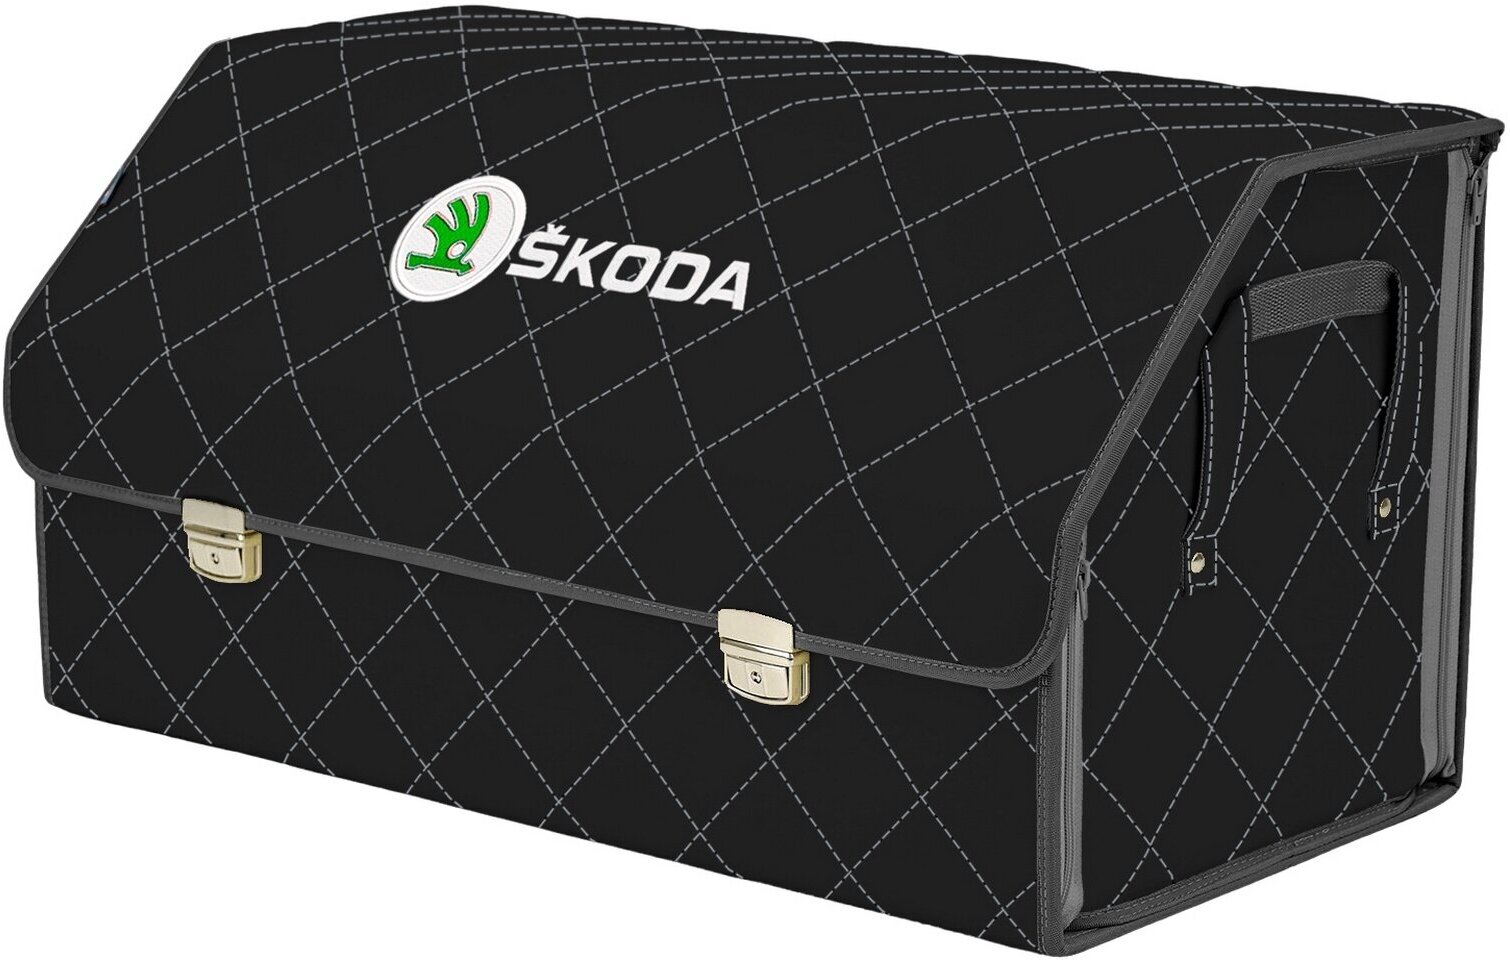 Органайзер-саквояж в багажник "Союз Премиум" (размер XL Plus). Цвет: черный с серой прострочкой Ромб и вышивкой Skoda (Шкода).